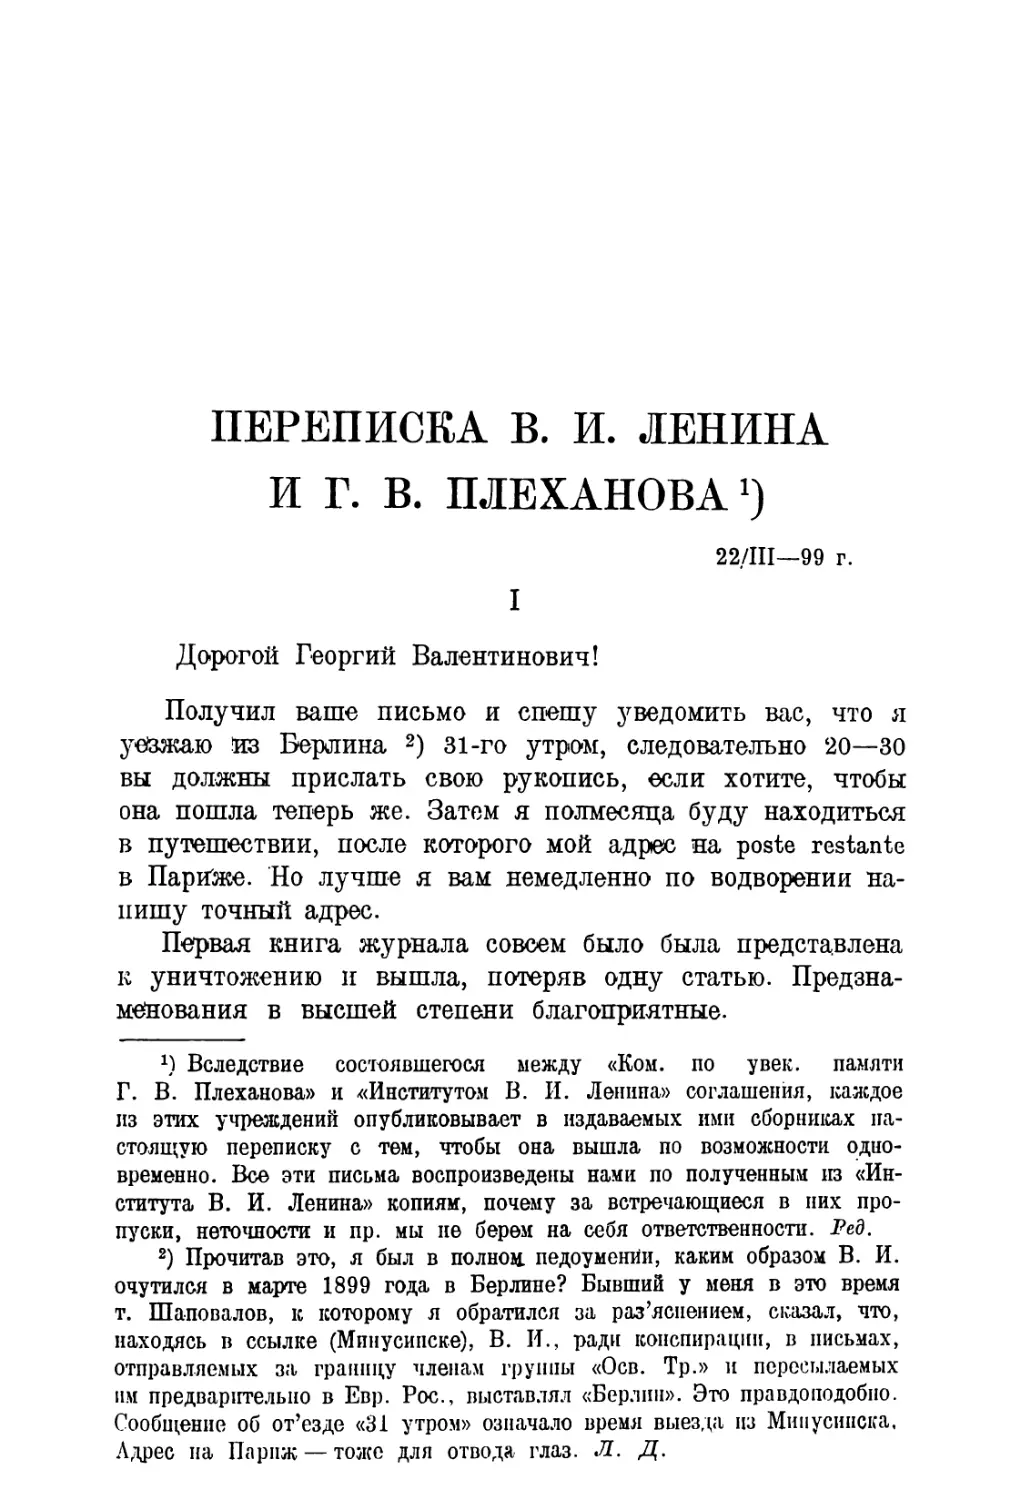 15. В. И. Ленин и Г. В. Плеханов. — Переписка